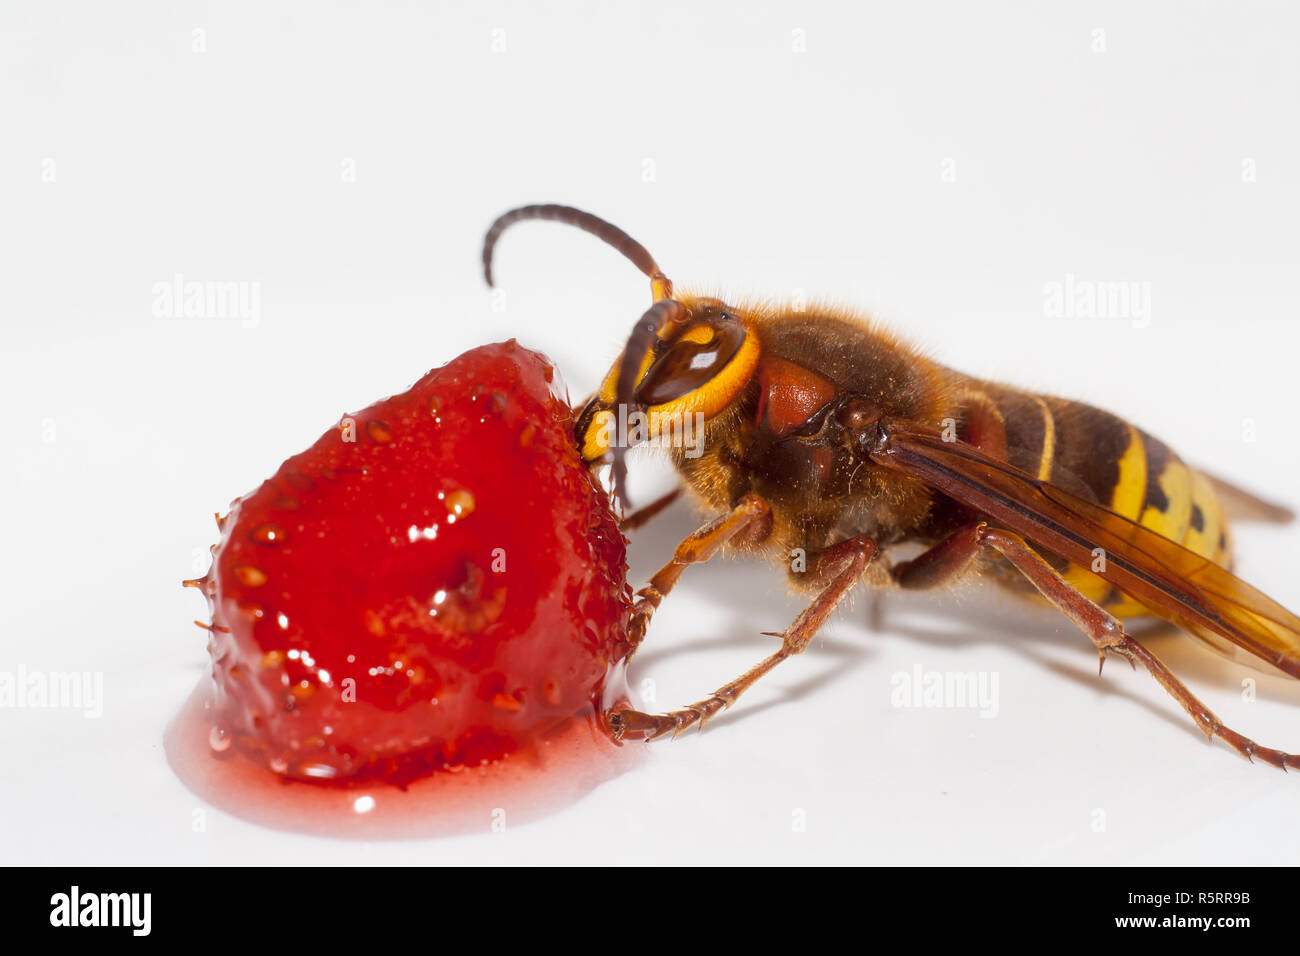 big hornet vespa mandarinia eating strawberry on white background Stock Photo